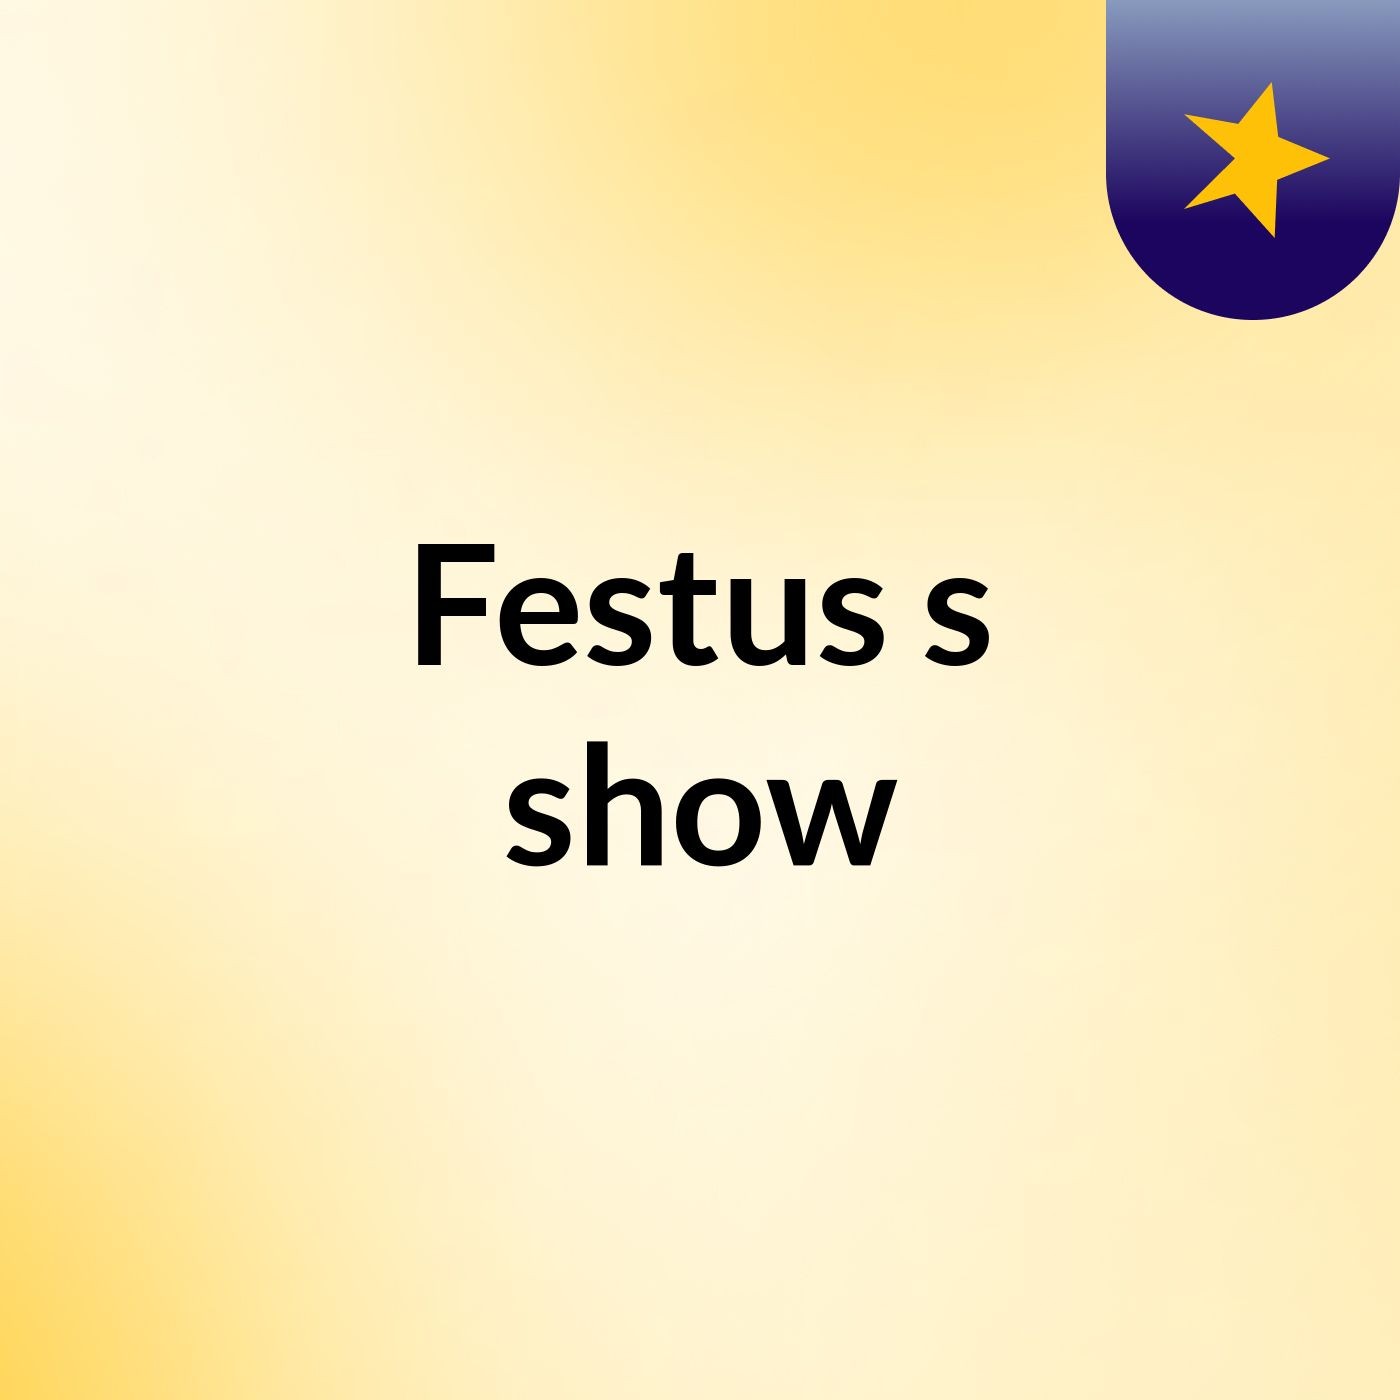 Episode 1 - Festus's show